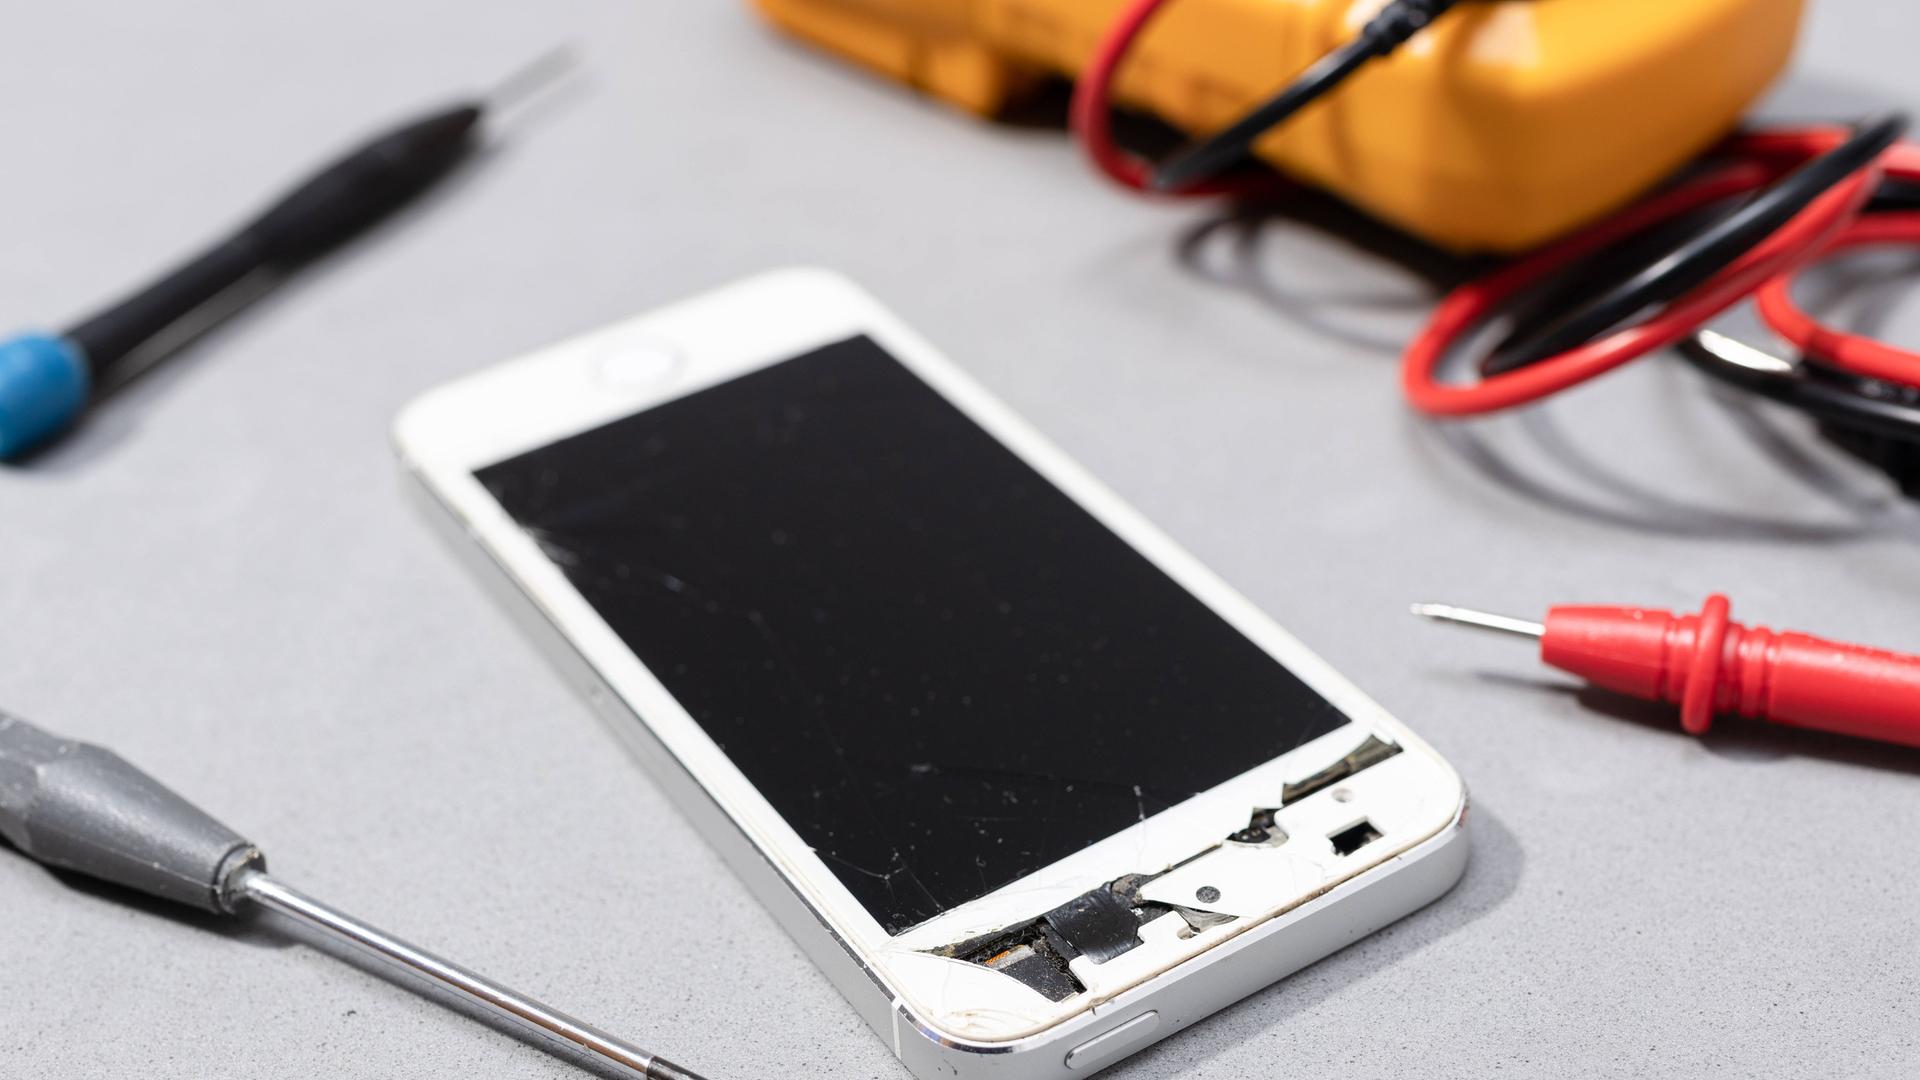 Reparatur von beschädigten Handy: Zu sehen ist ein Smartphone mit kaputtem Bildschirm auf der Werkbank eines Elektronikgeschäfts.